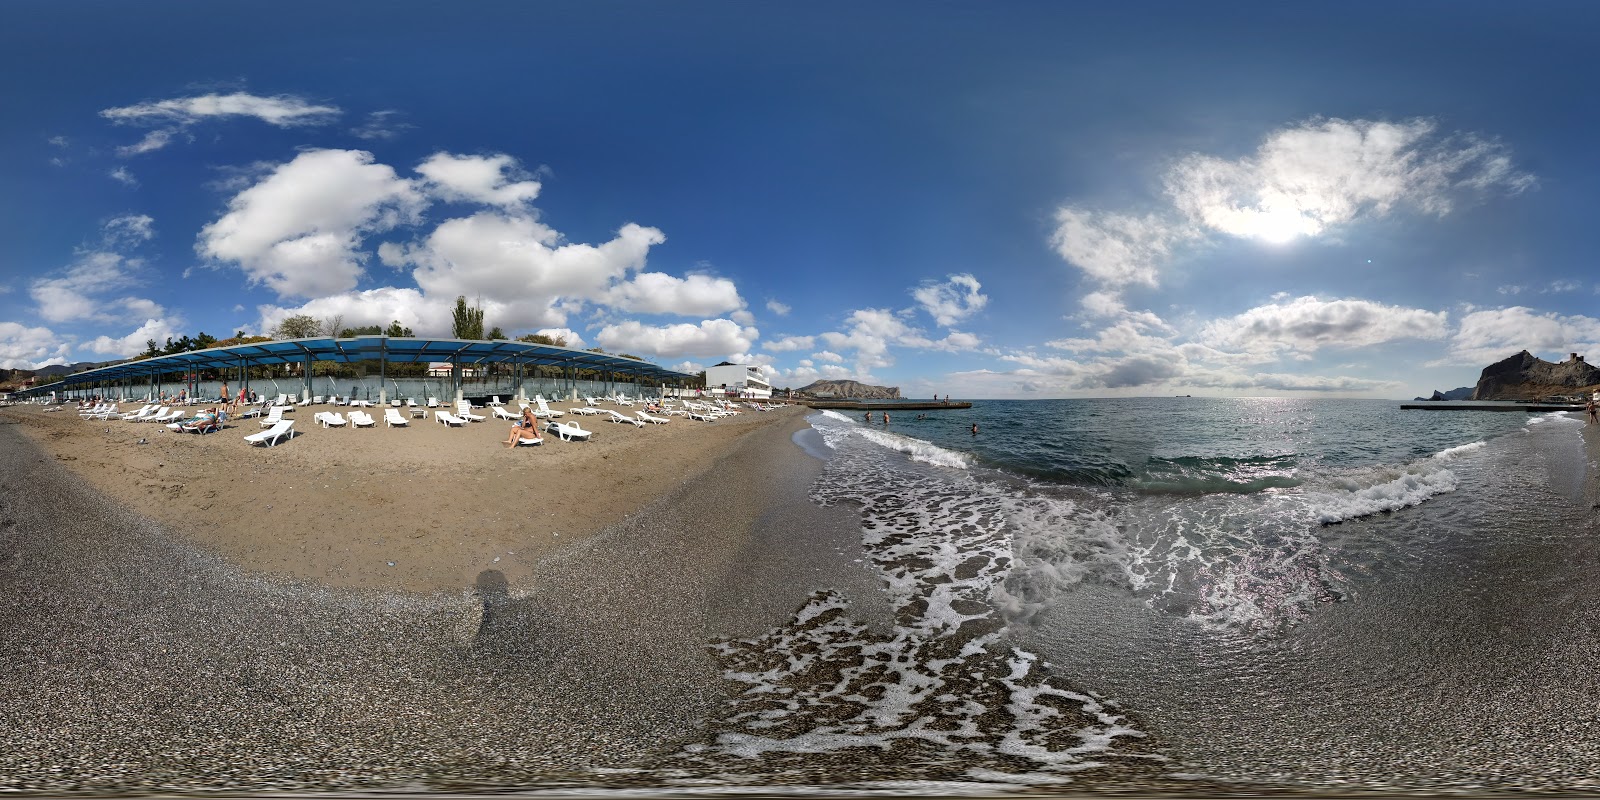 Foto af Rassvet Beach - populært sted blandt afslapningskendere